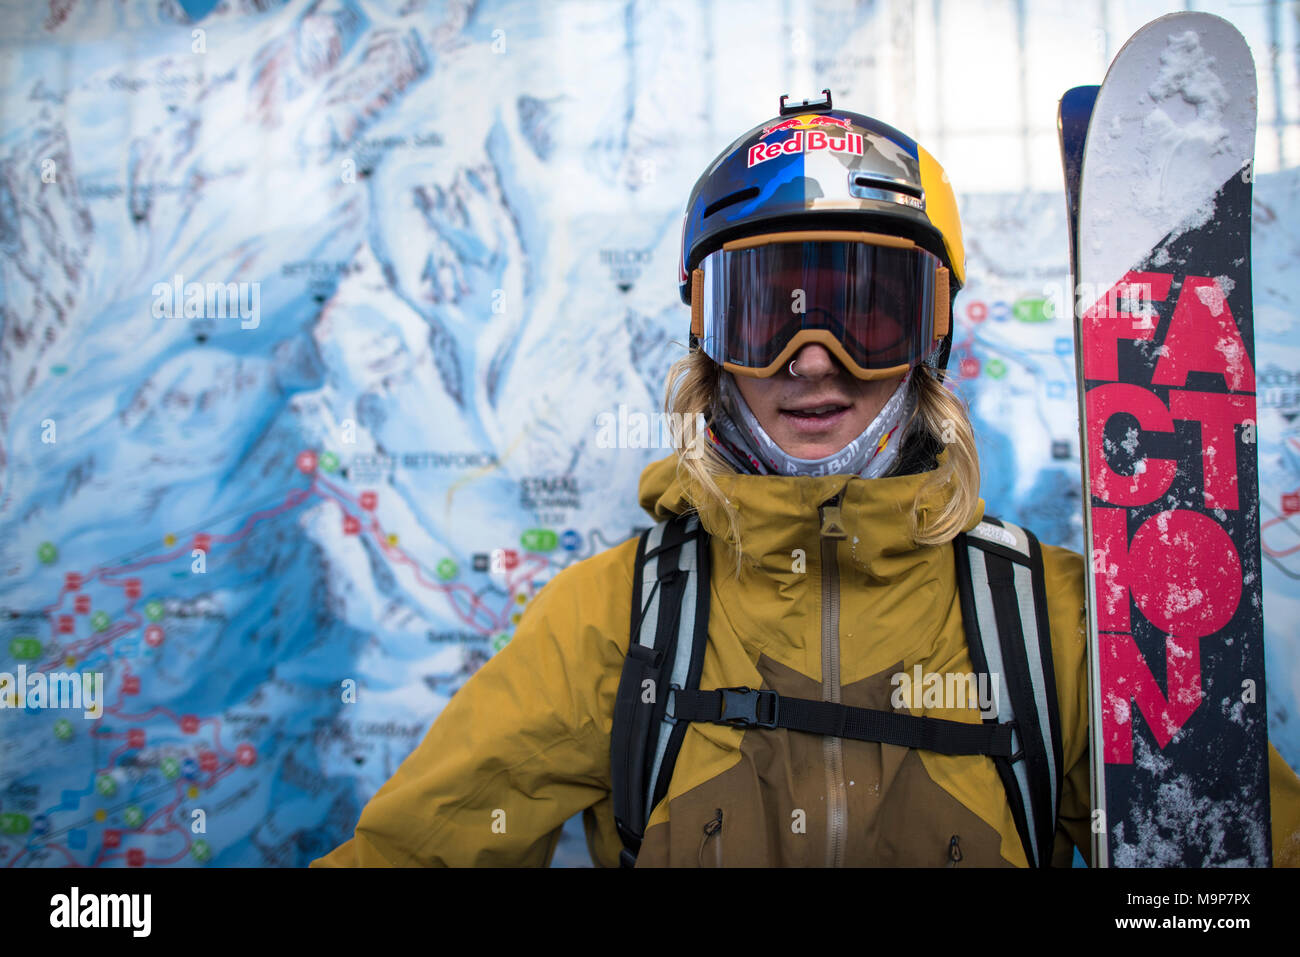 Portrait von Skifahrer in Skibekleidung, Monterosa Ski Mountain Resort in Gressoney, Aosta, Italien Stockfoto